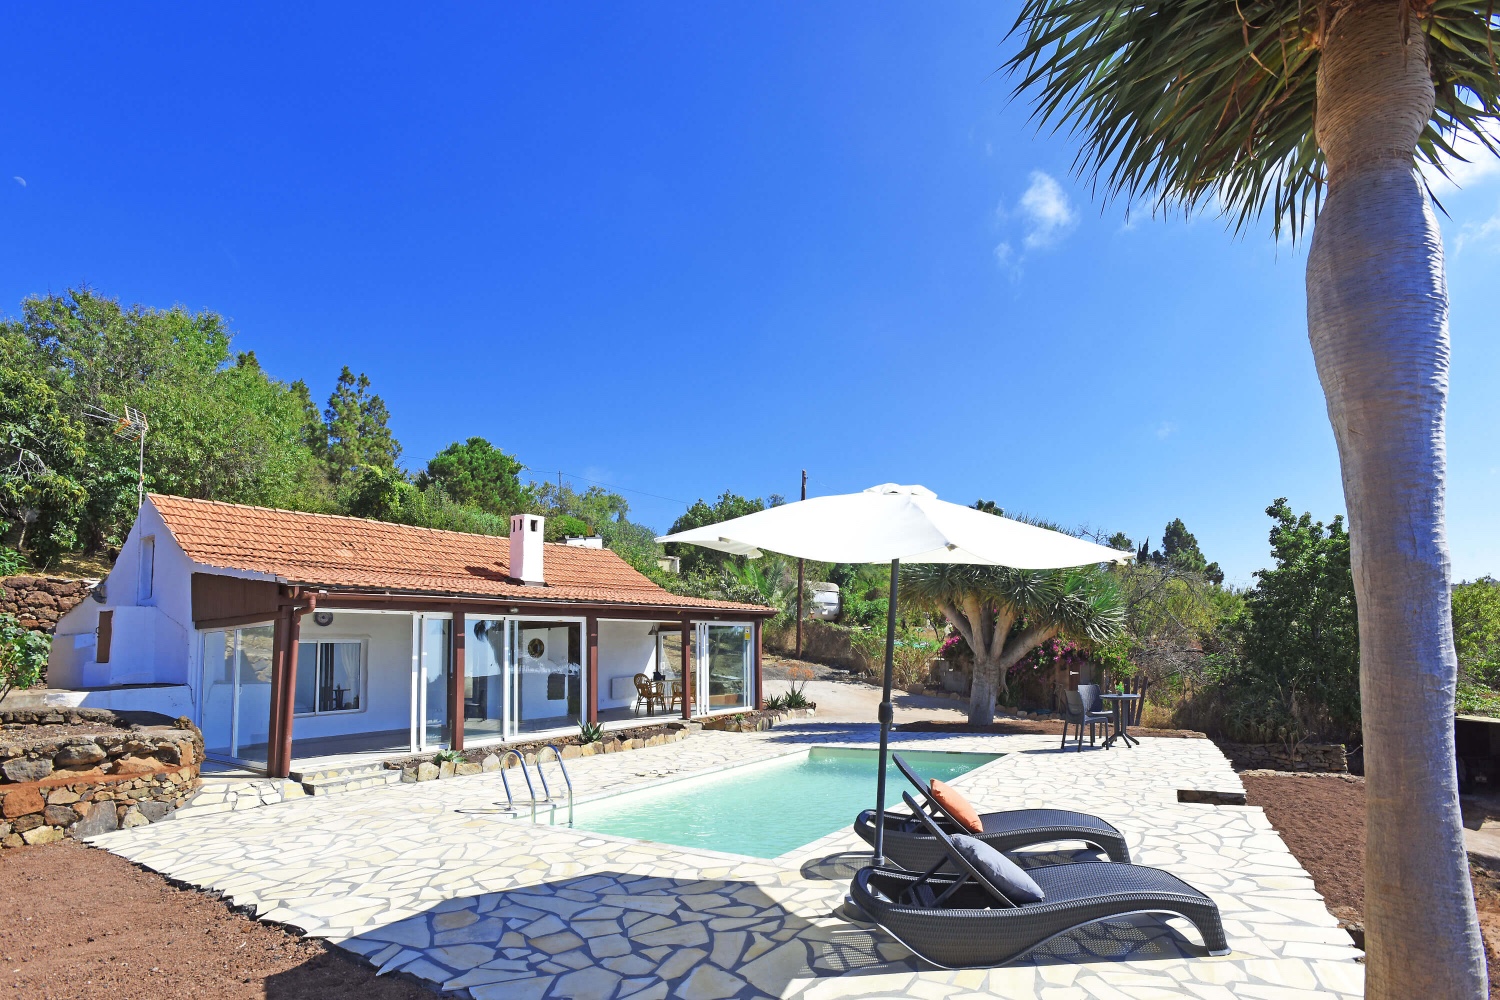 Casa de vacaciones de estilo moderno con grandes zonas exteriores y piscina privada en Puntagorda